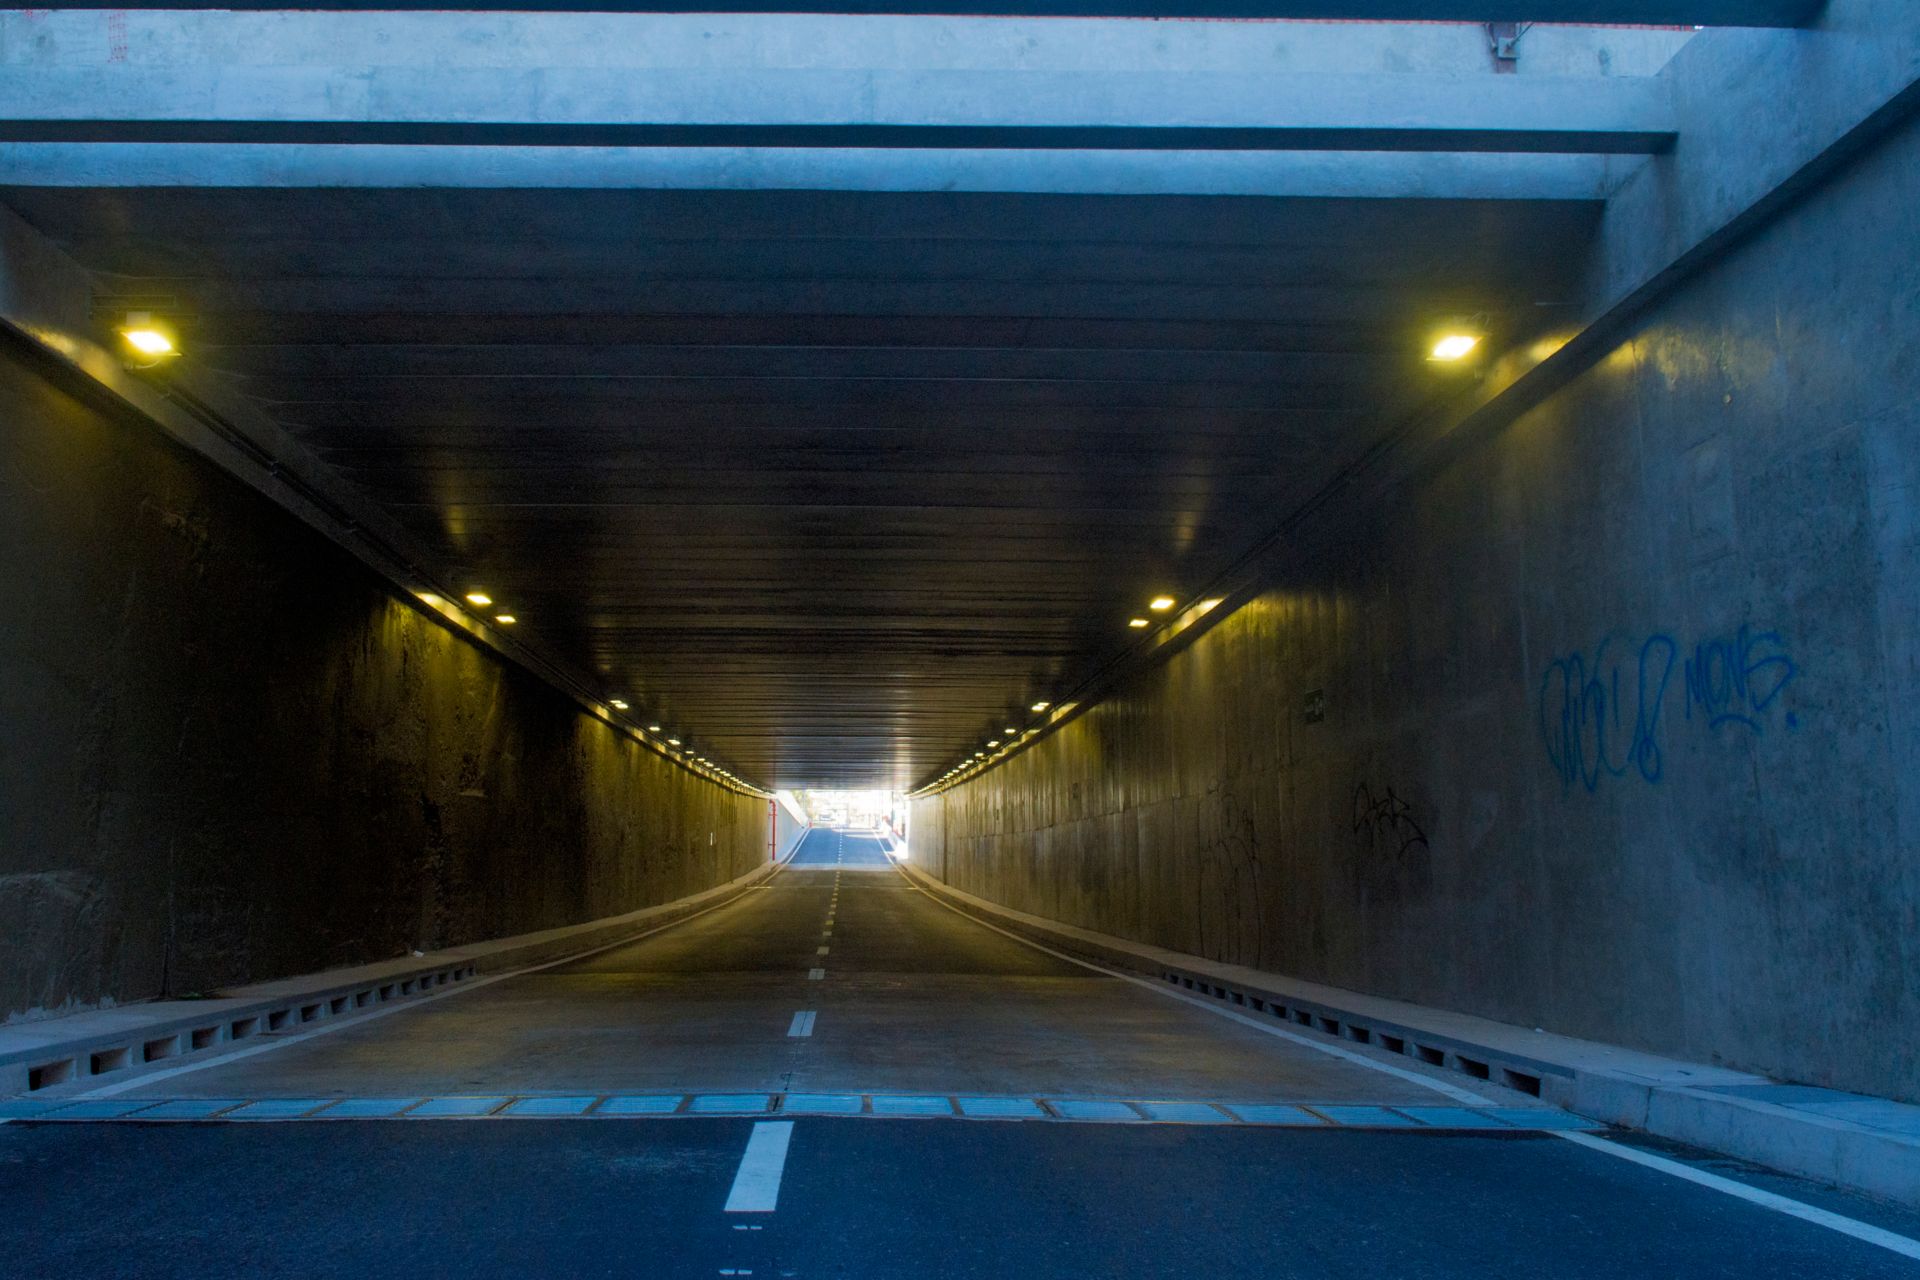 Vista del tunel de un extremo al otro